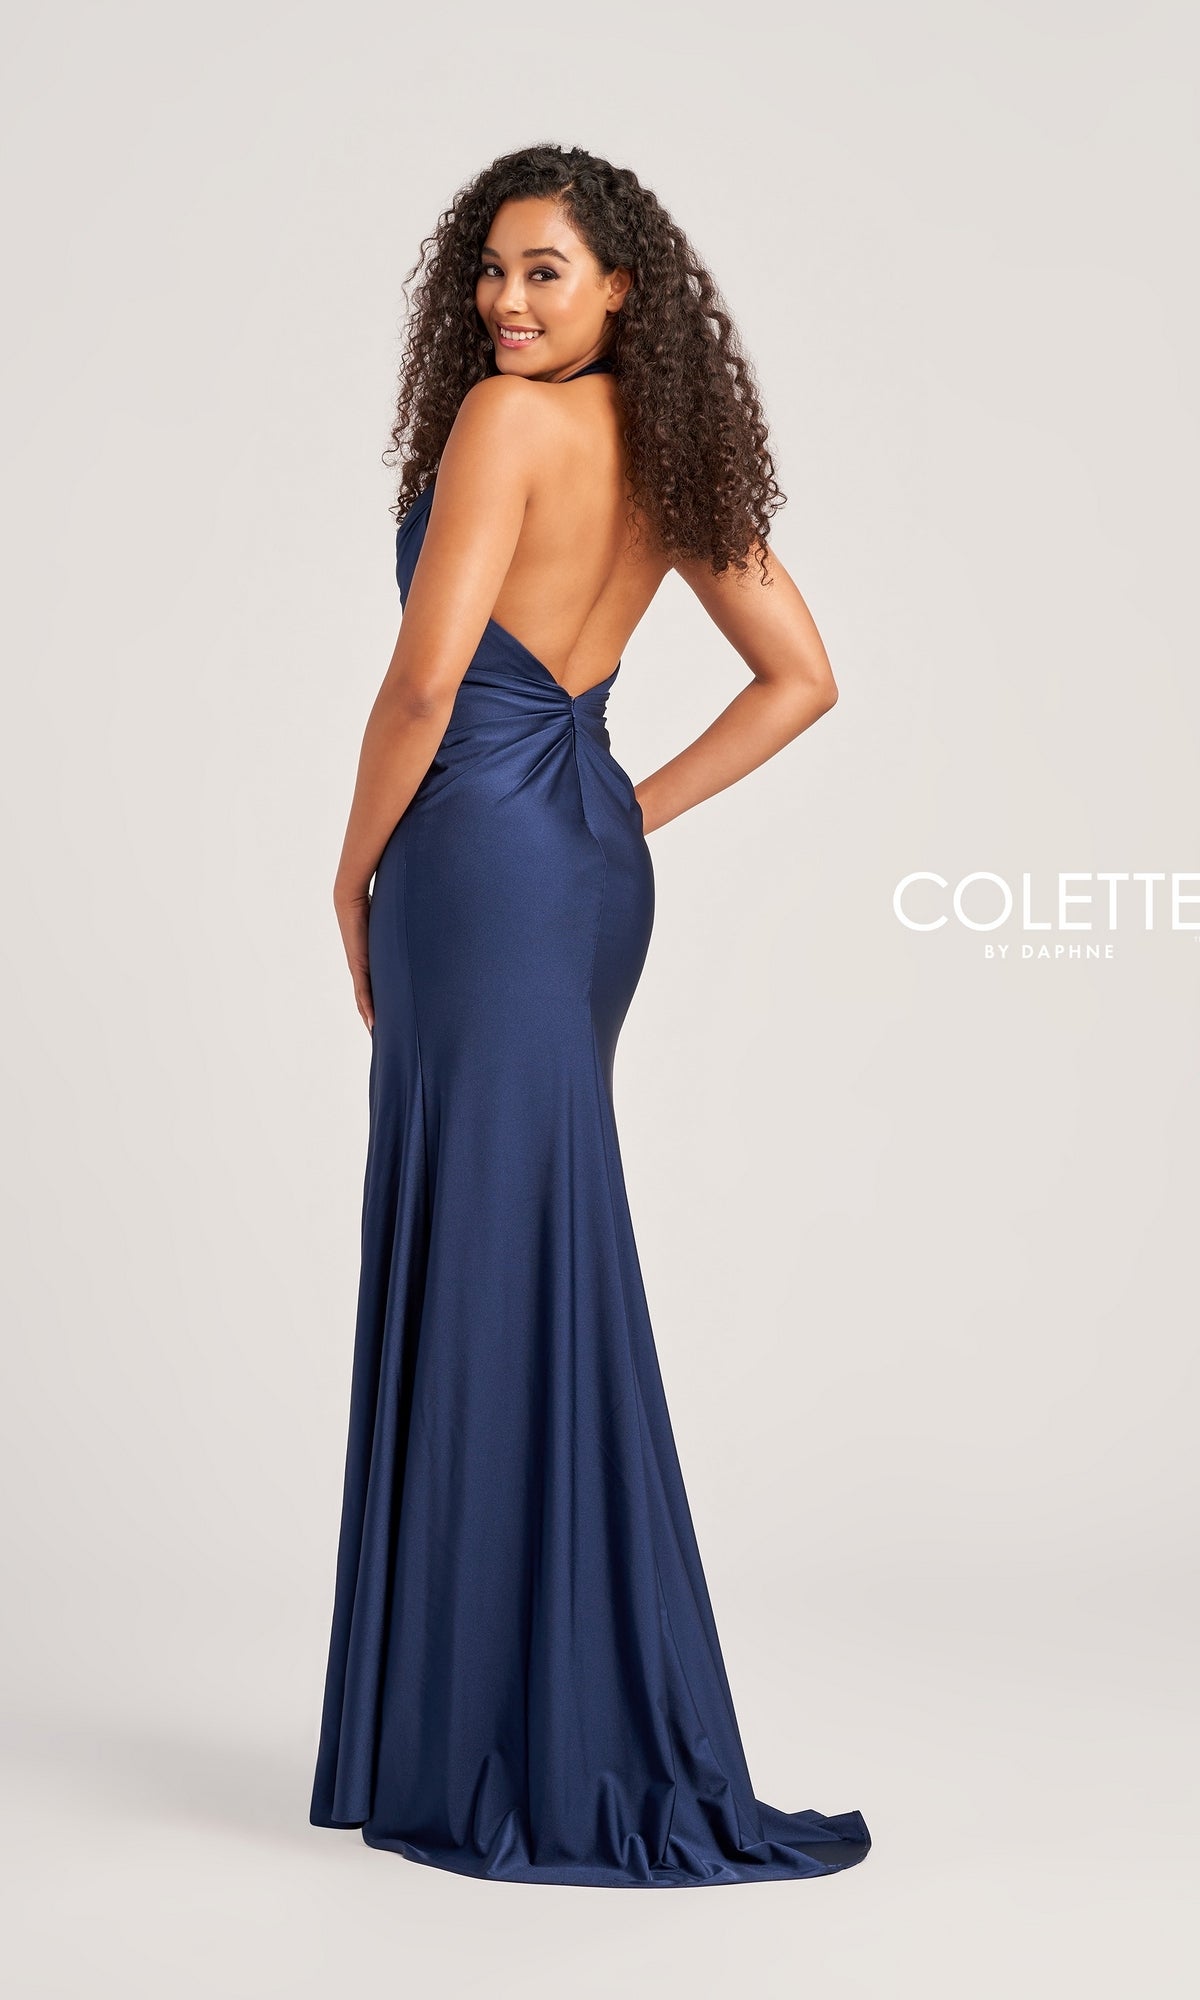 Colette Backless Long Halter Prom Dress CL5164